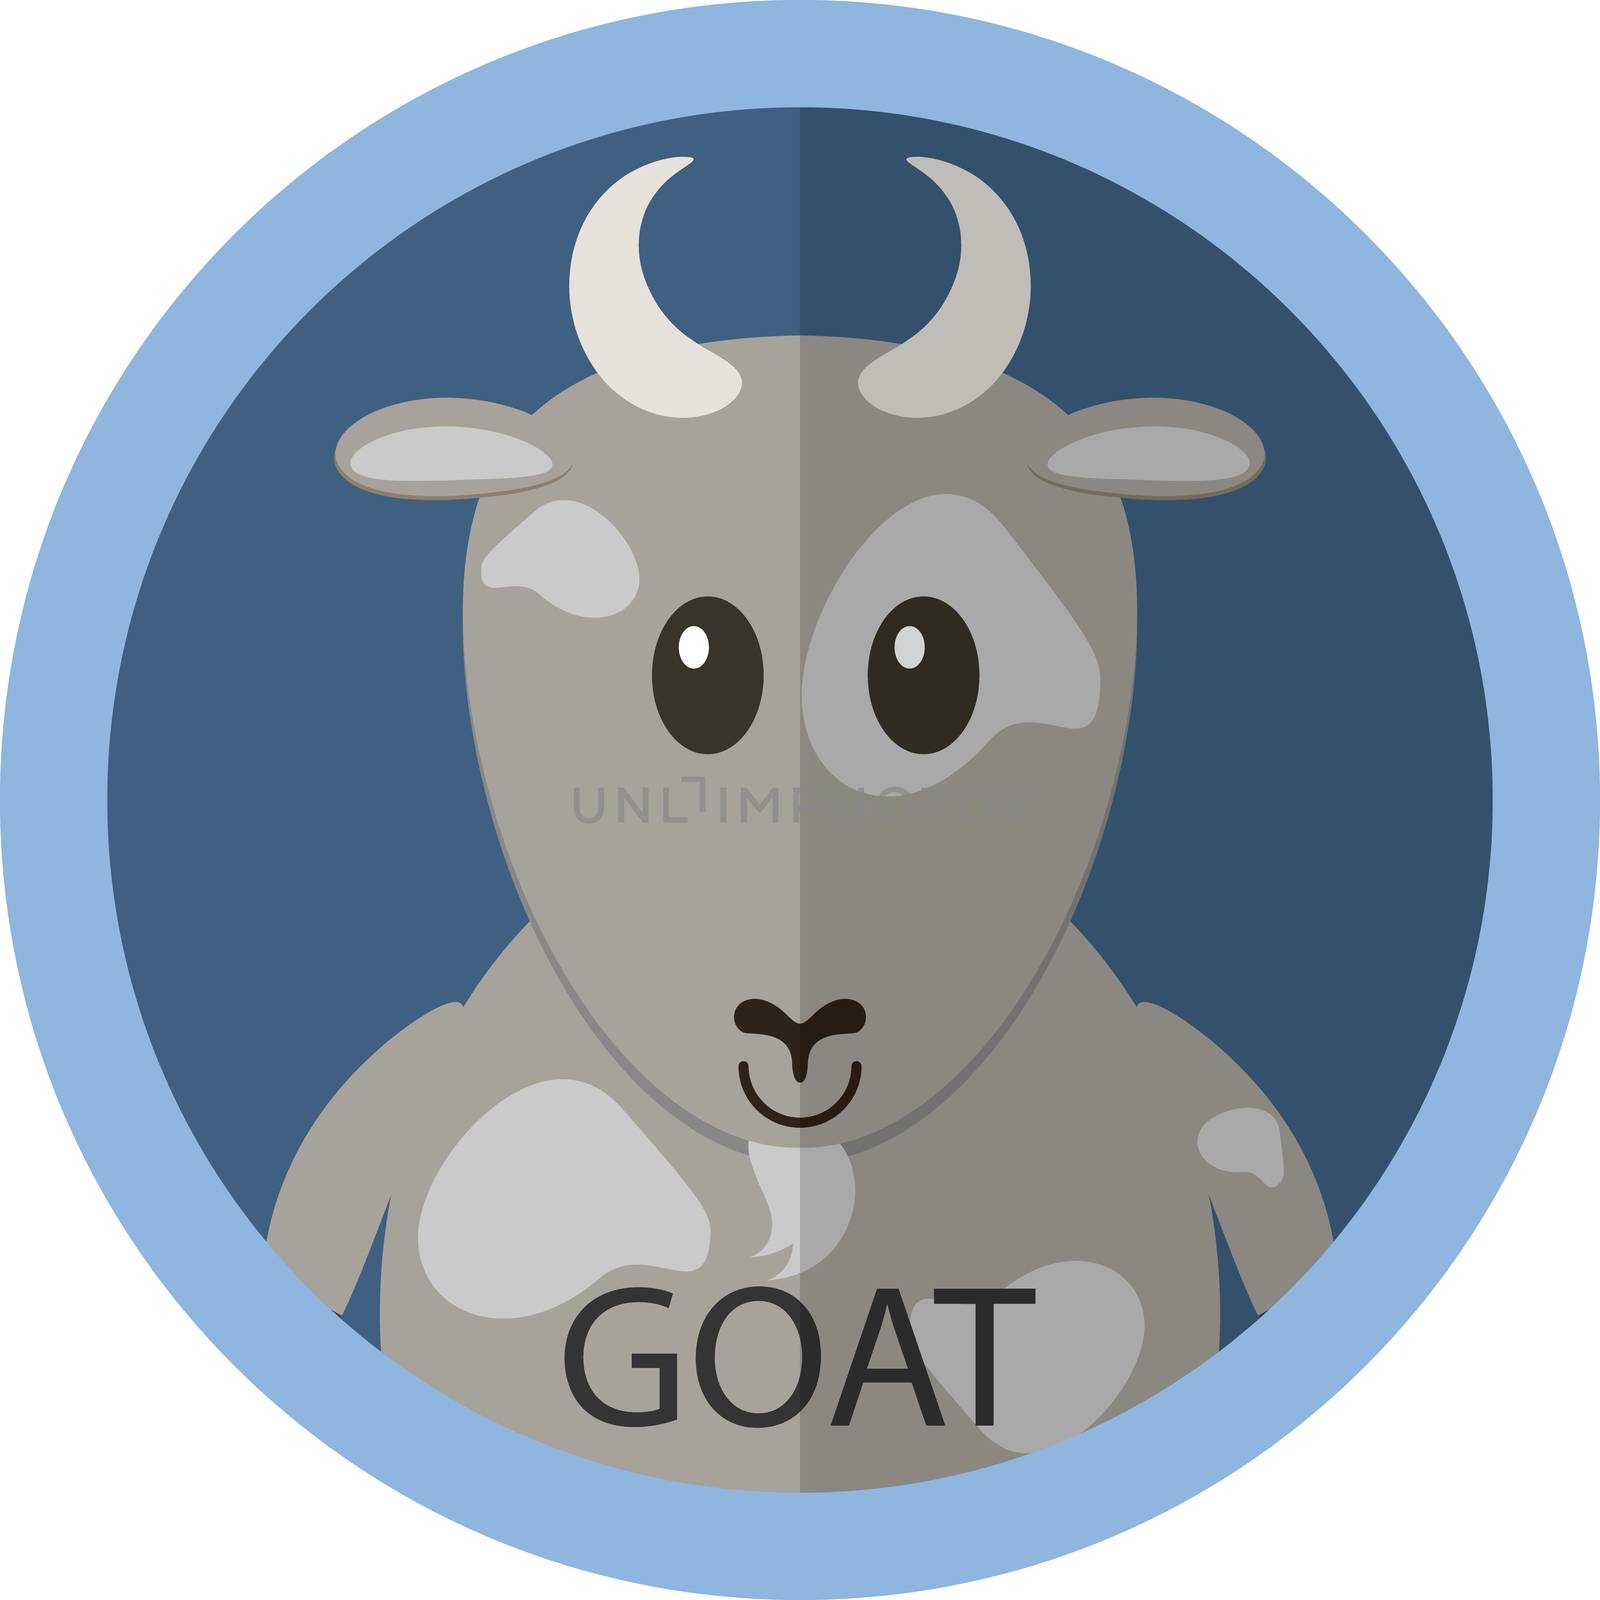 Cute grey goat cartoon flat icon avatar by Lemon_workshop